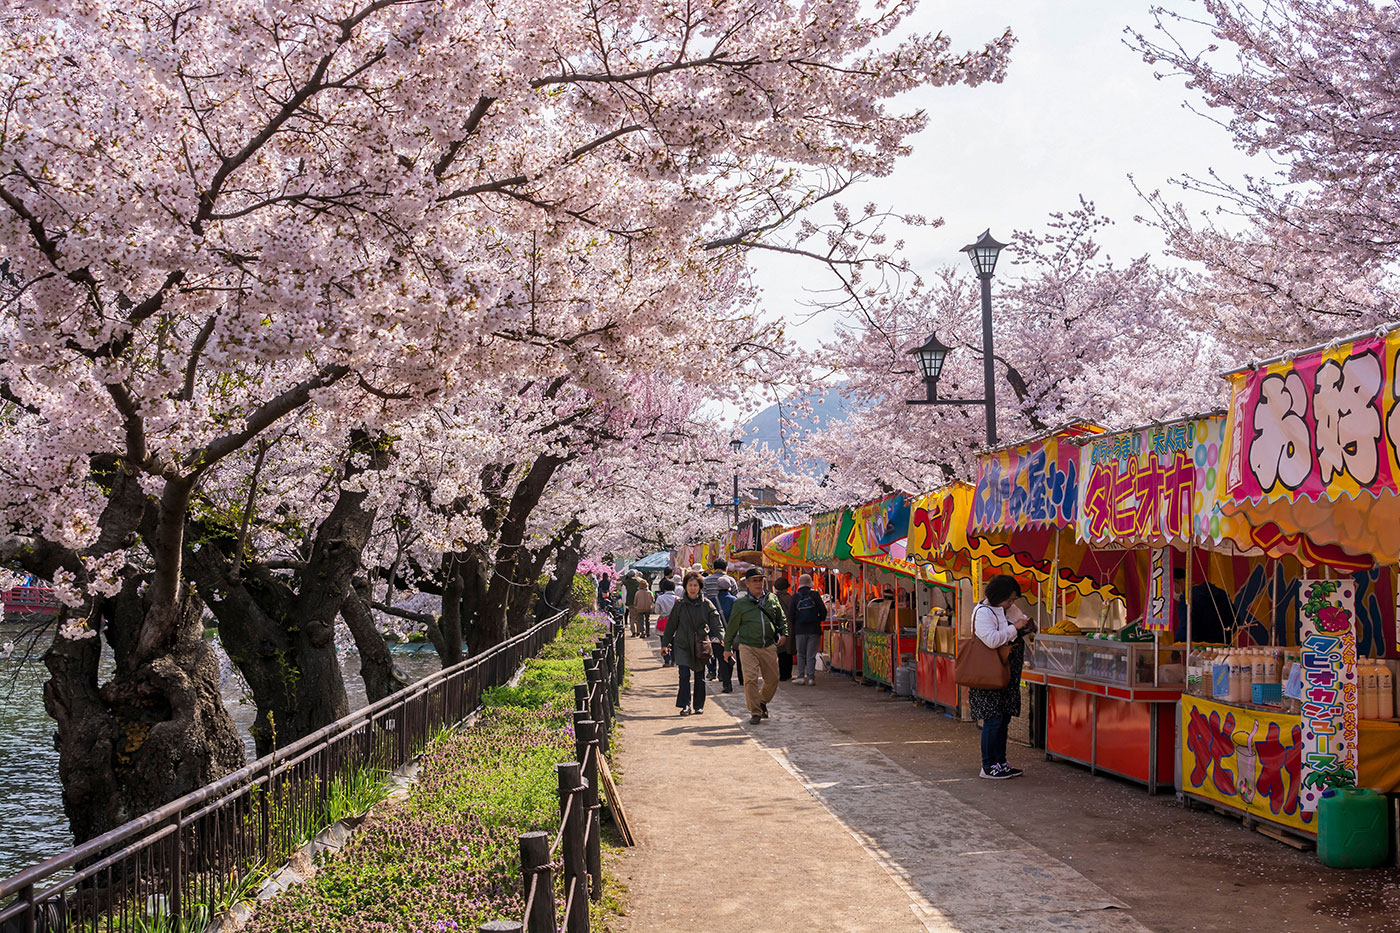 Il Parco Garyu a Nagano, in Giappone, si trasforma in un vivace punto di incontro dove i visitatori assaporano la bellezza del sakura, accanto a un delizioso mercatino lungo il fiume